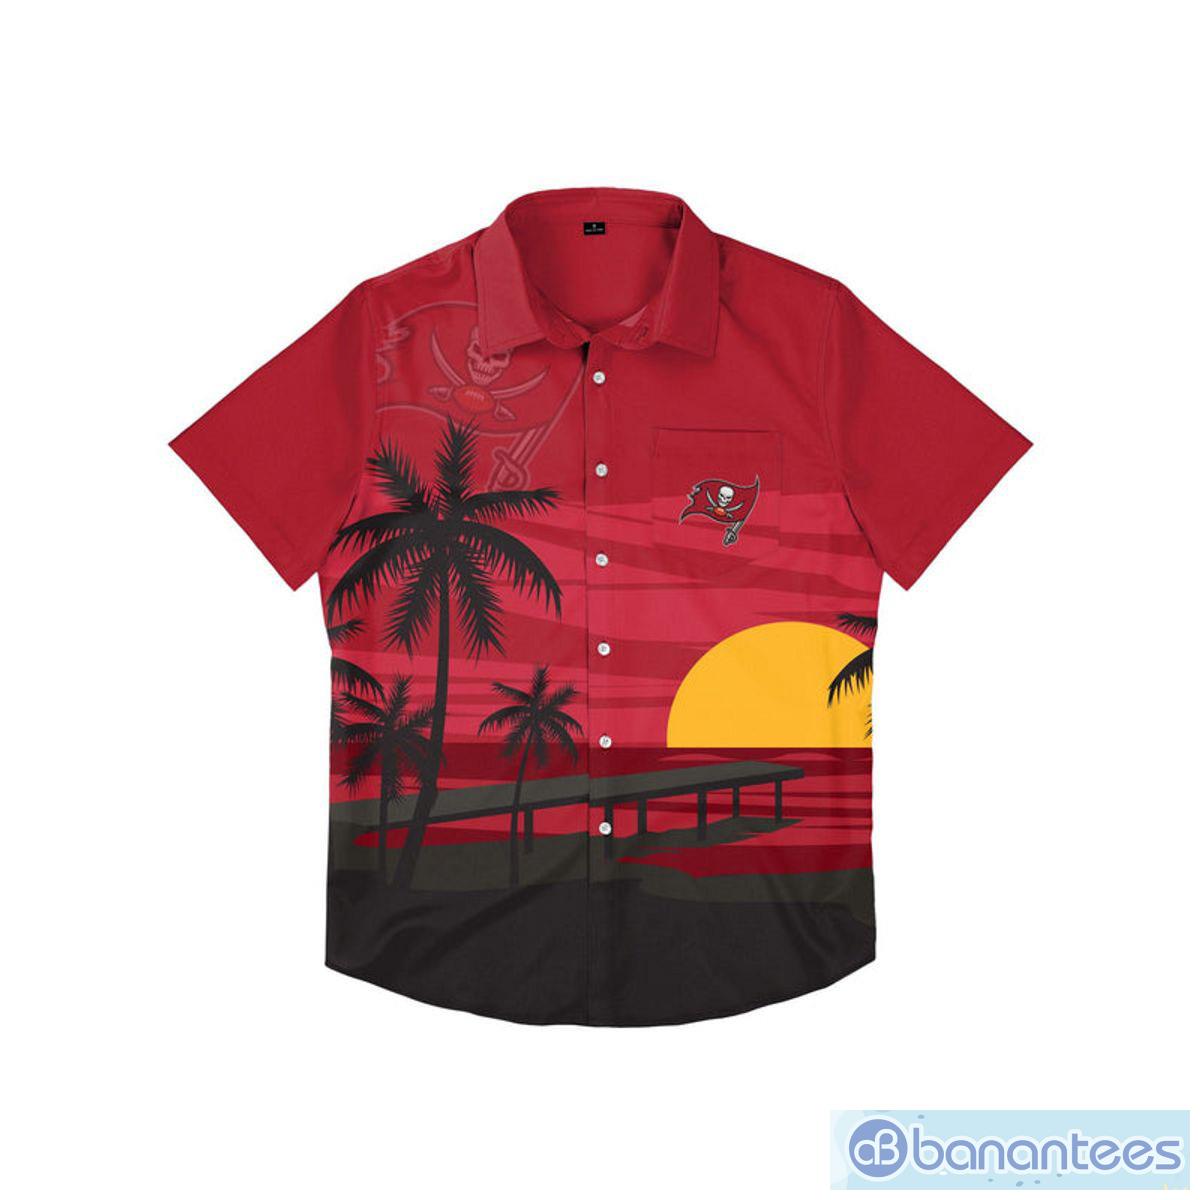 St Louis Cardinals Camp Shirt Sz XL Red MLB Hawaian Button up Nice